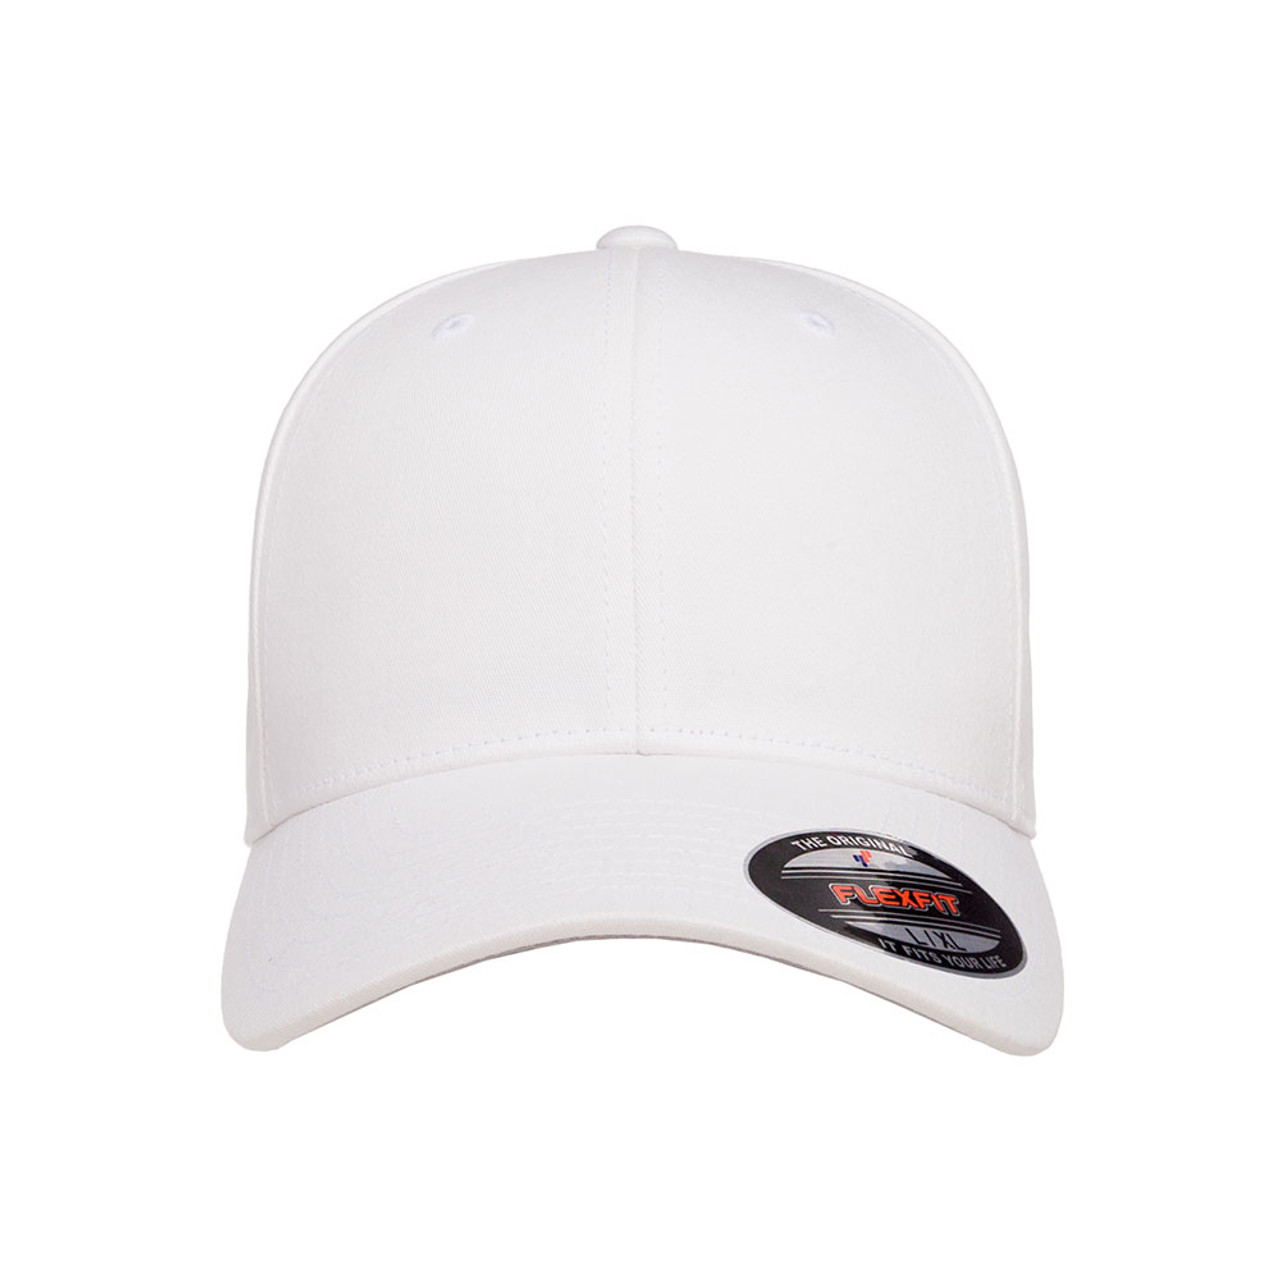 V-Flexfit Cotton Twill Cap - One Dozen | The Jac Hat